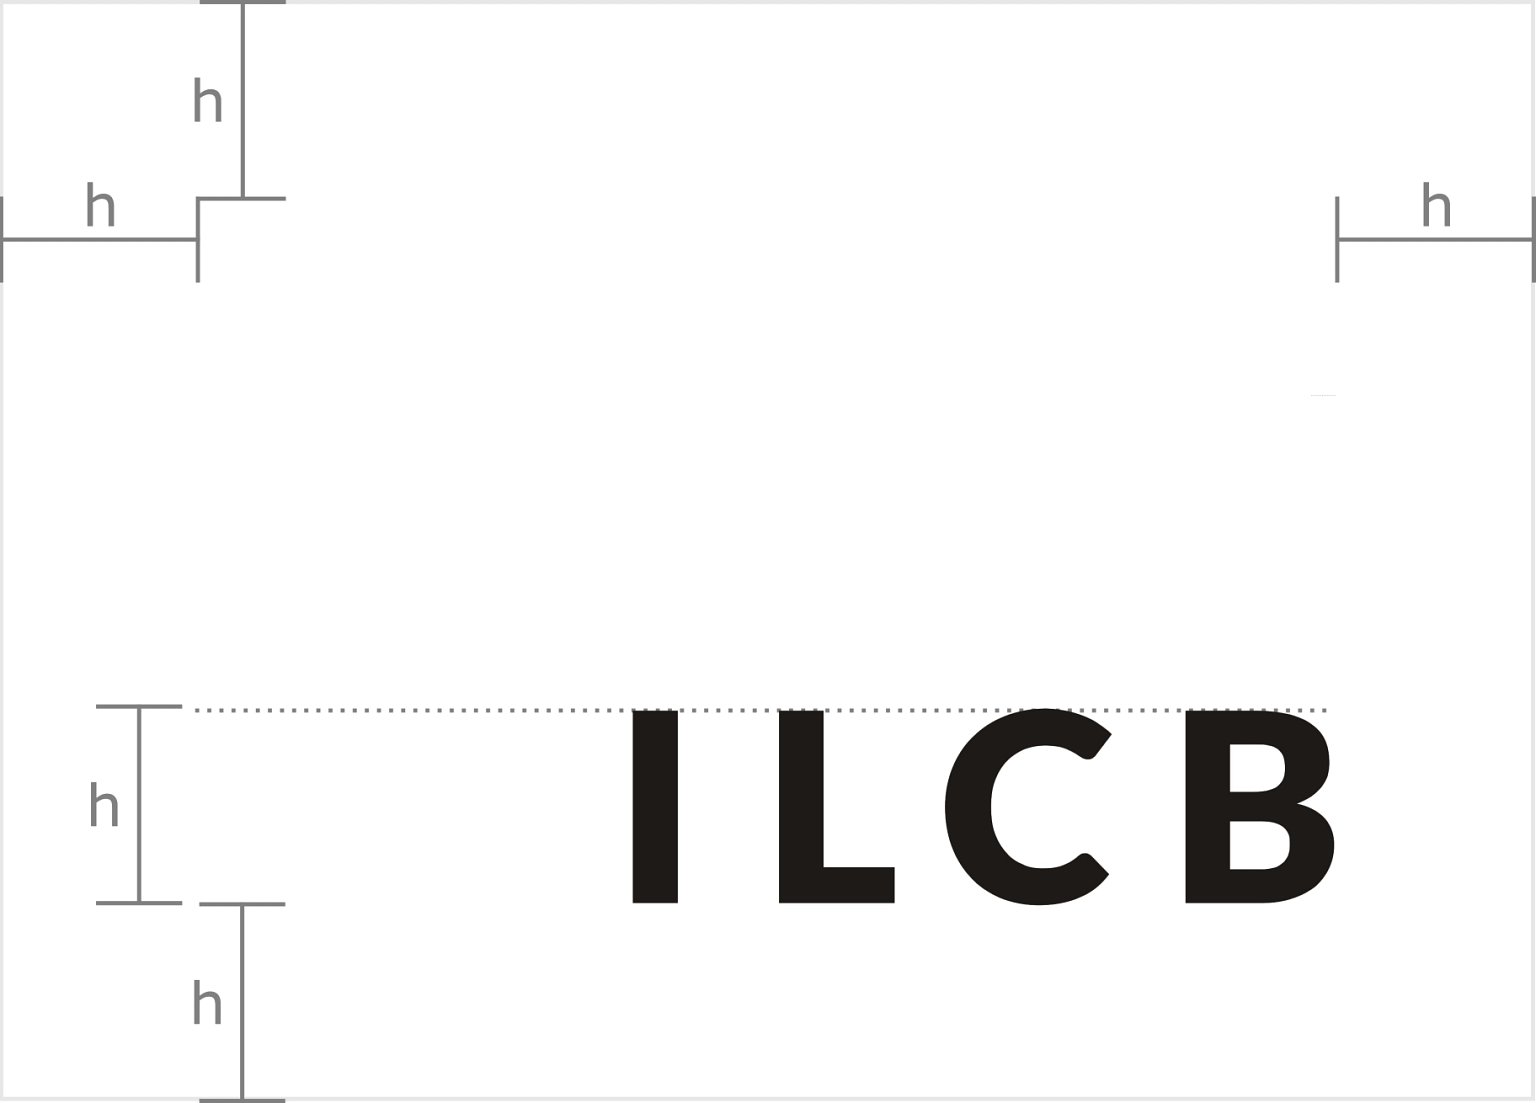 logos-ILCB_Fibonacci-04